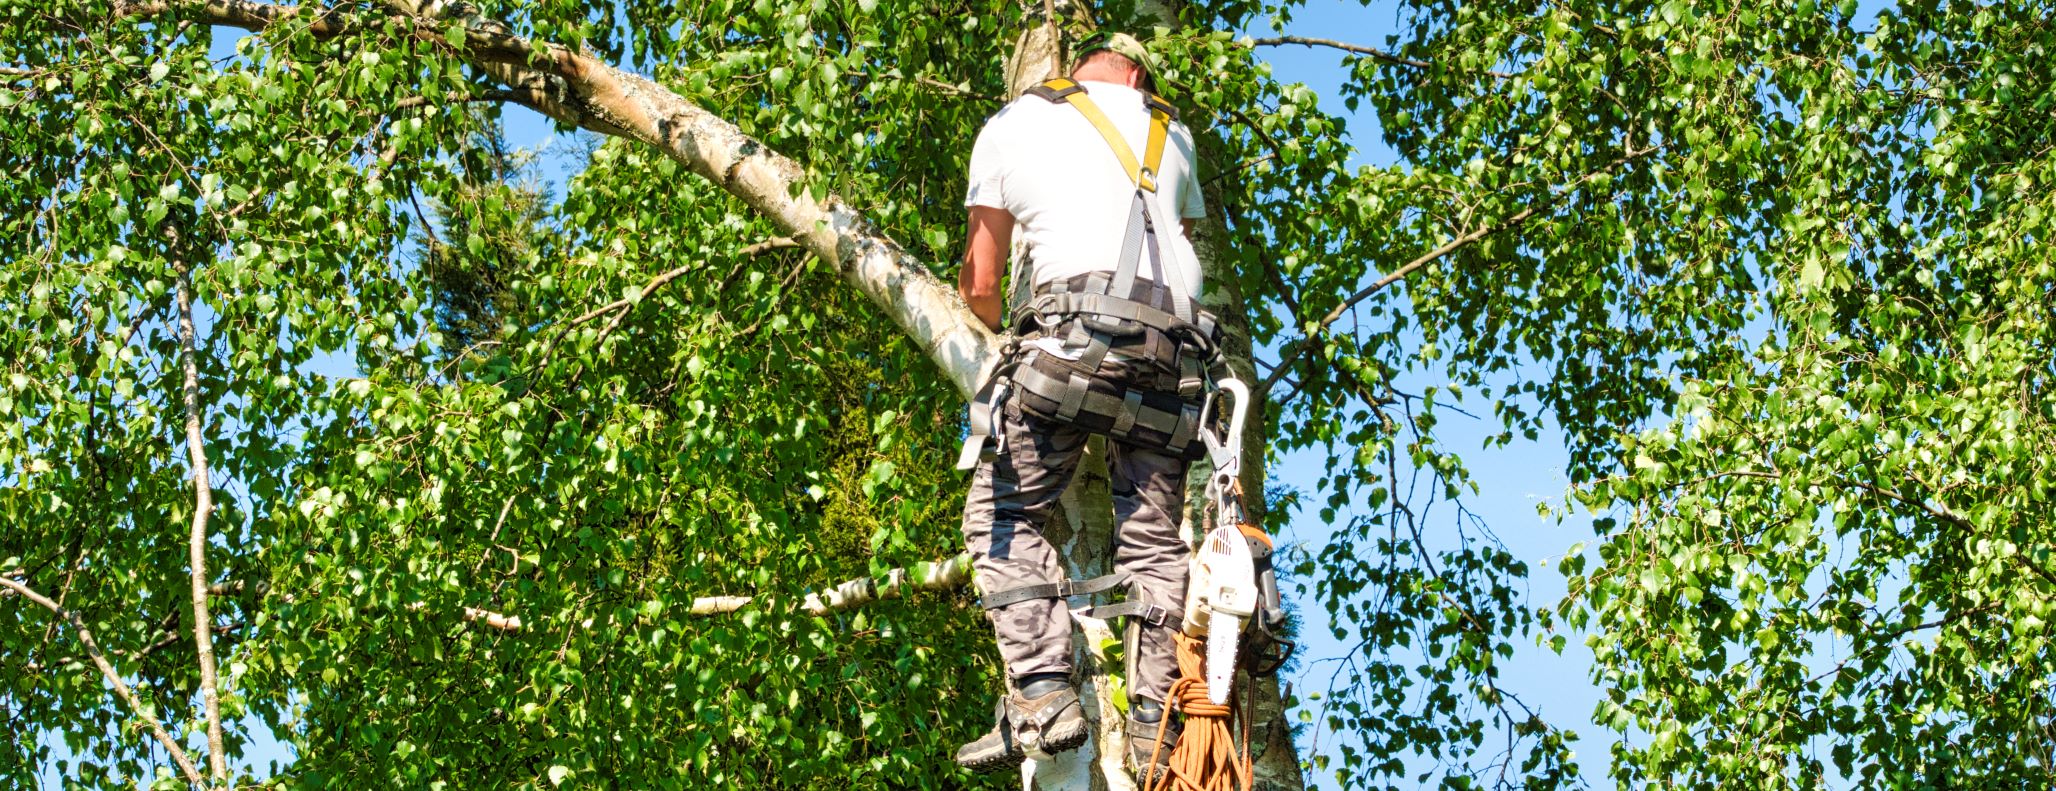 Pracownik drzew używający sprzętu zabezpieczającego do przycinania gałęzi wysoko na drzewie.